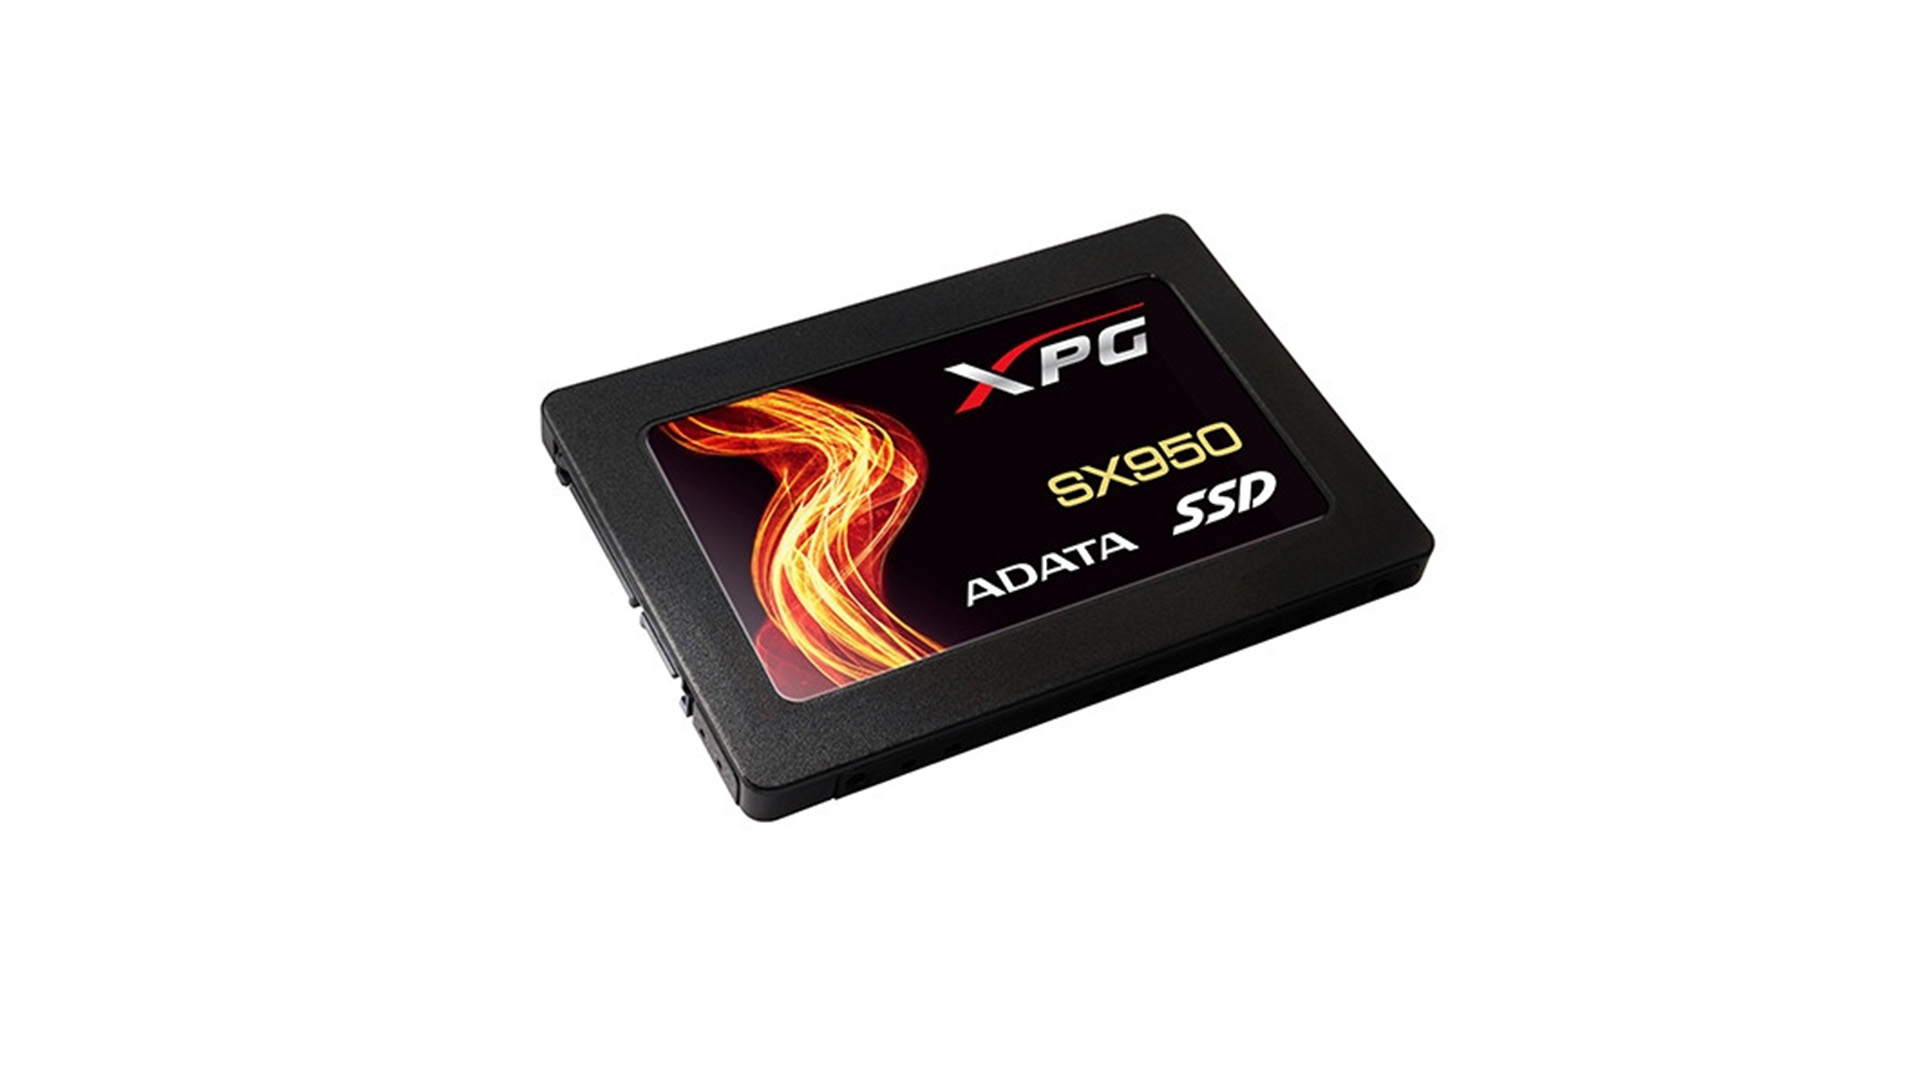 6 年保固與3D MLC NAND Flash，Adata XPG SX950 SSD 登場- BenchLife.info